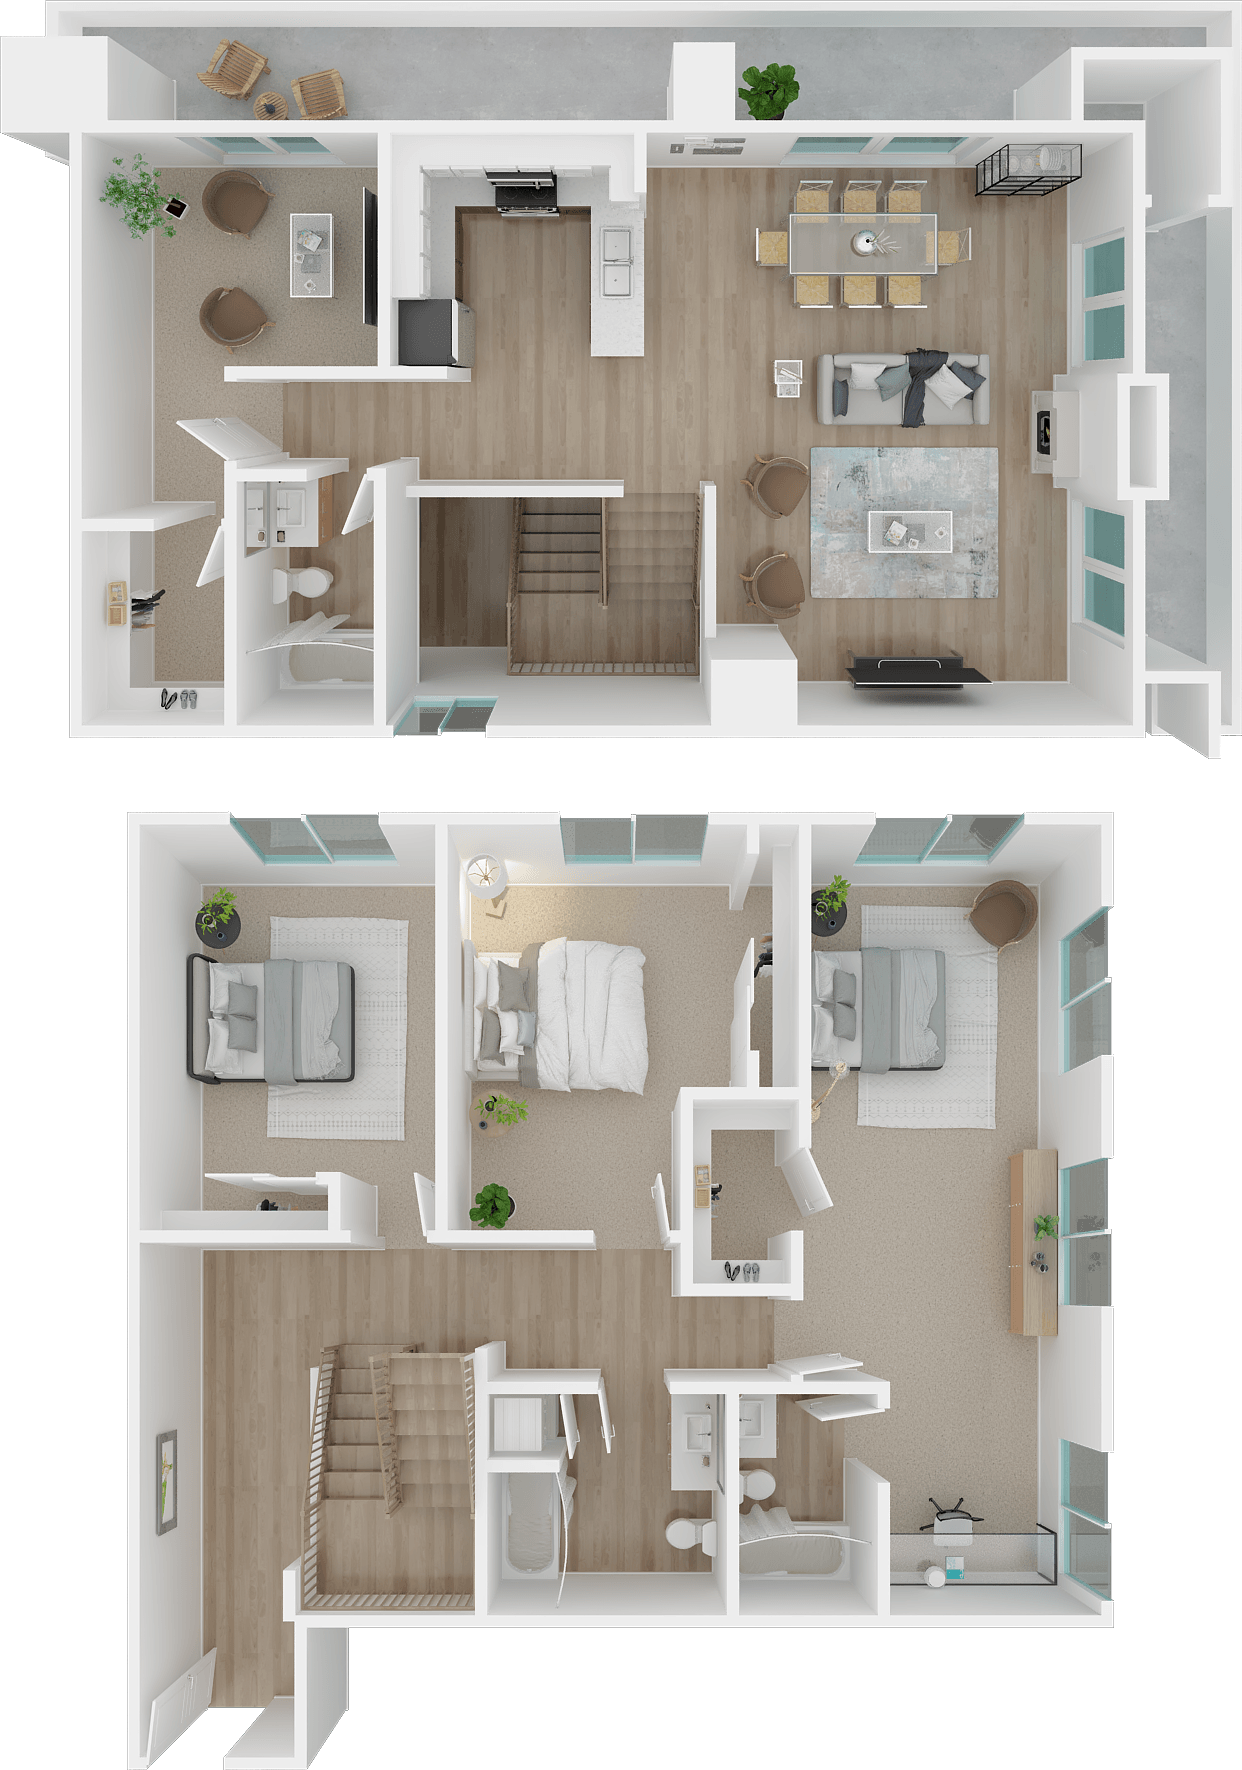 Eisen 3x3 penthouse floor plan, 1801L Apartments, Sacramento CA